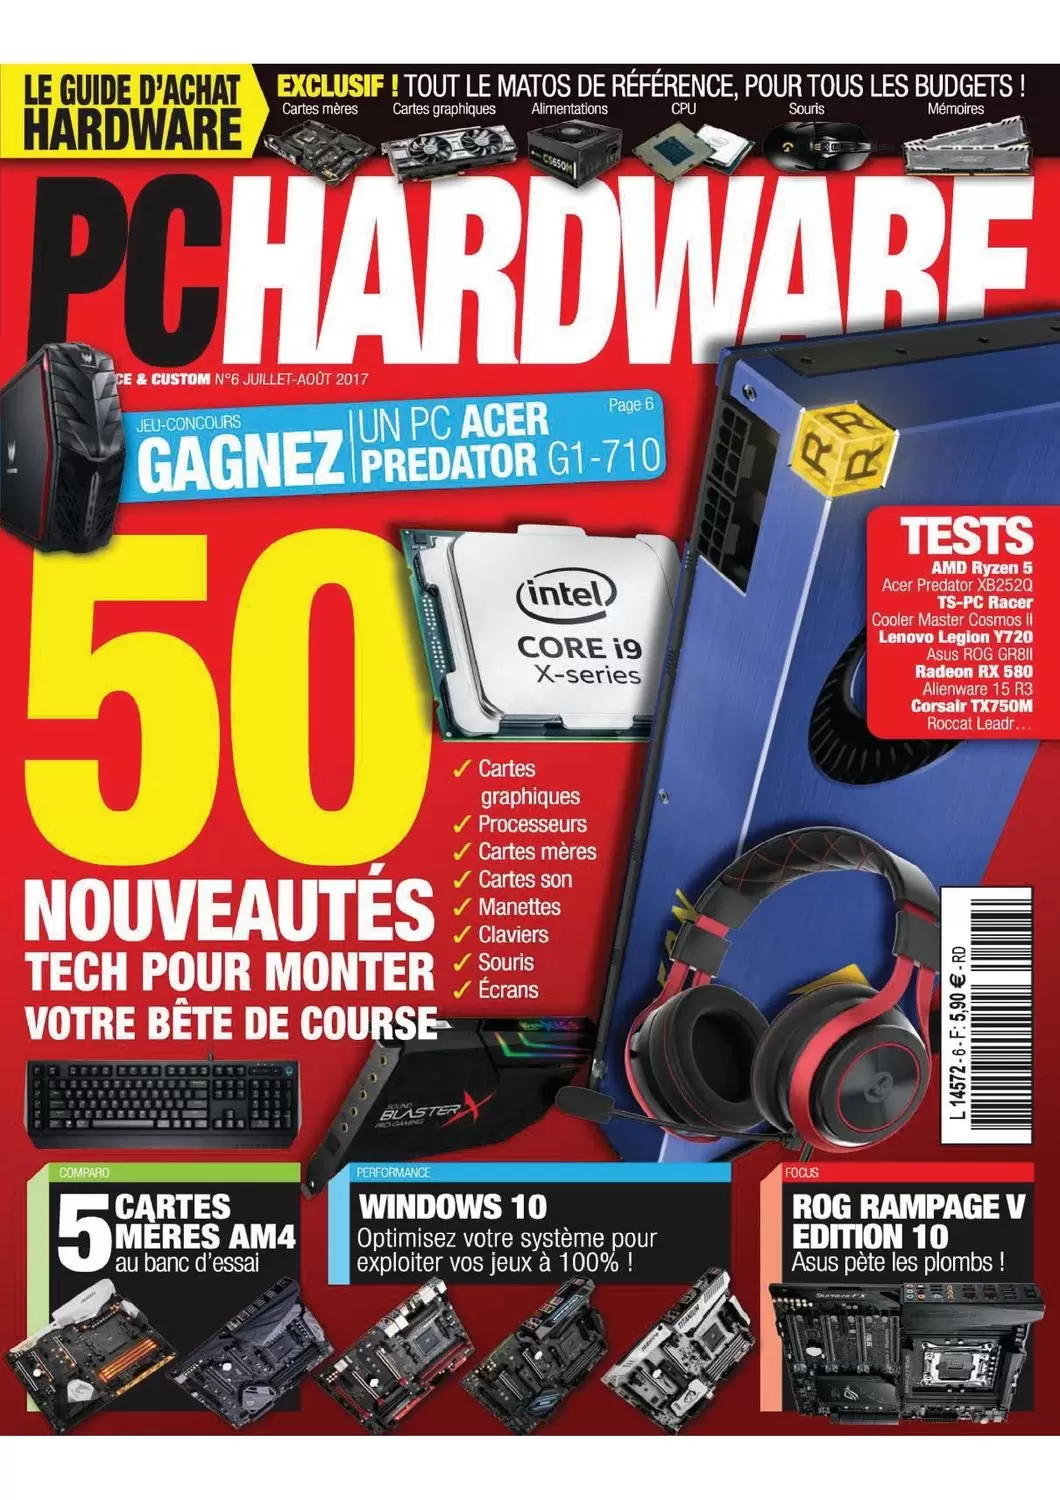 PC Hardware - PC Hardware n°6